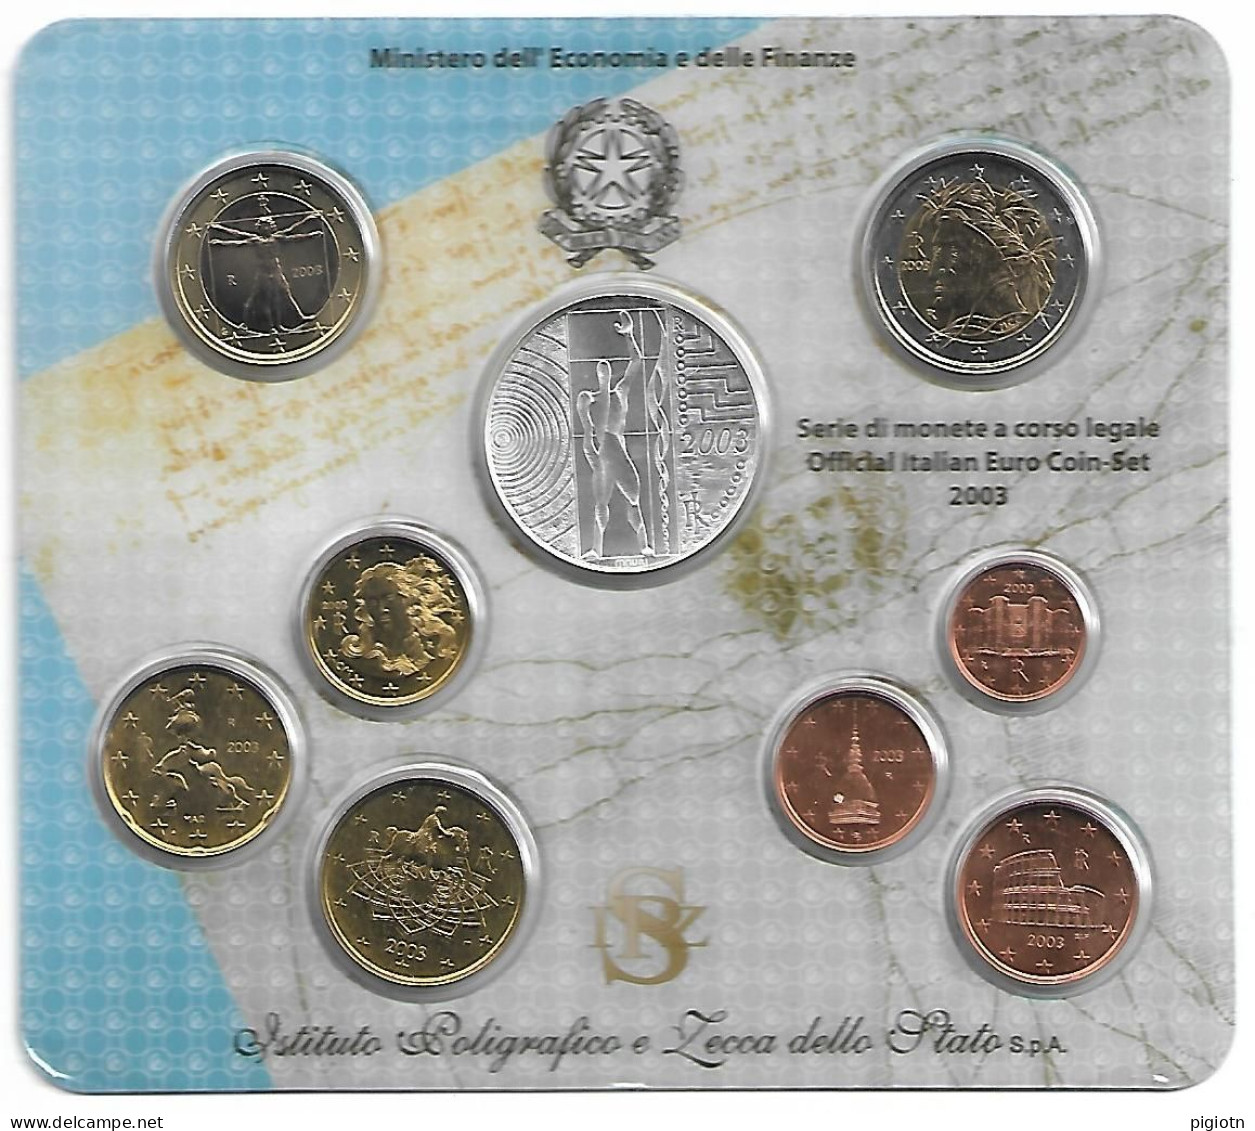 EURO 2003 - SERIE DI MONETE A CORSO LEGALE 2005 OFFICIAL ITALIAN COIN-SET - CON 5 EURO IN ARGENTO EUROPA DEL LAVORO - Jahressets & Polierte Platten